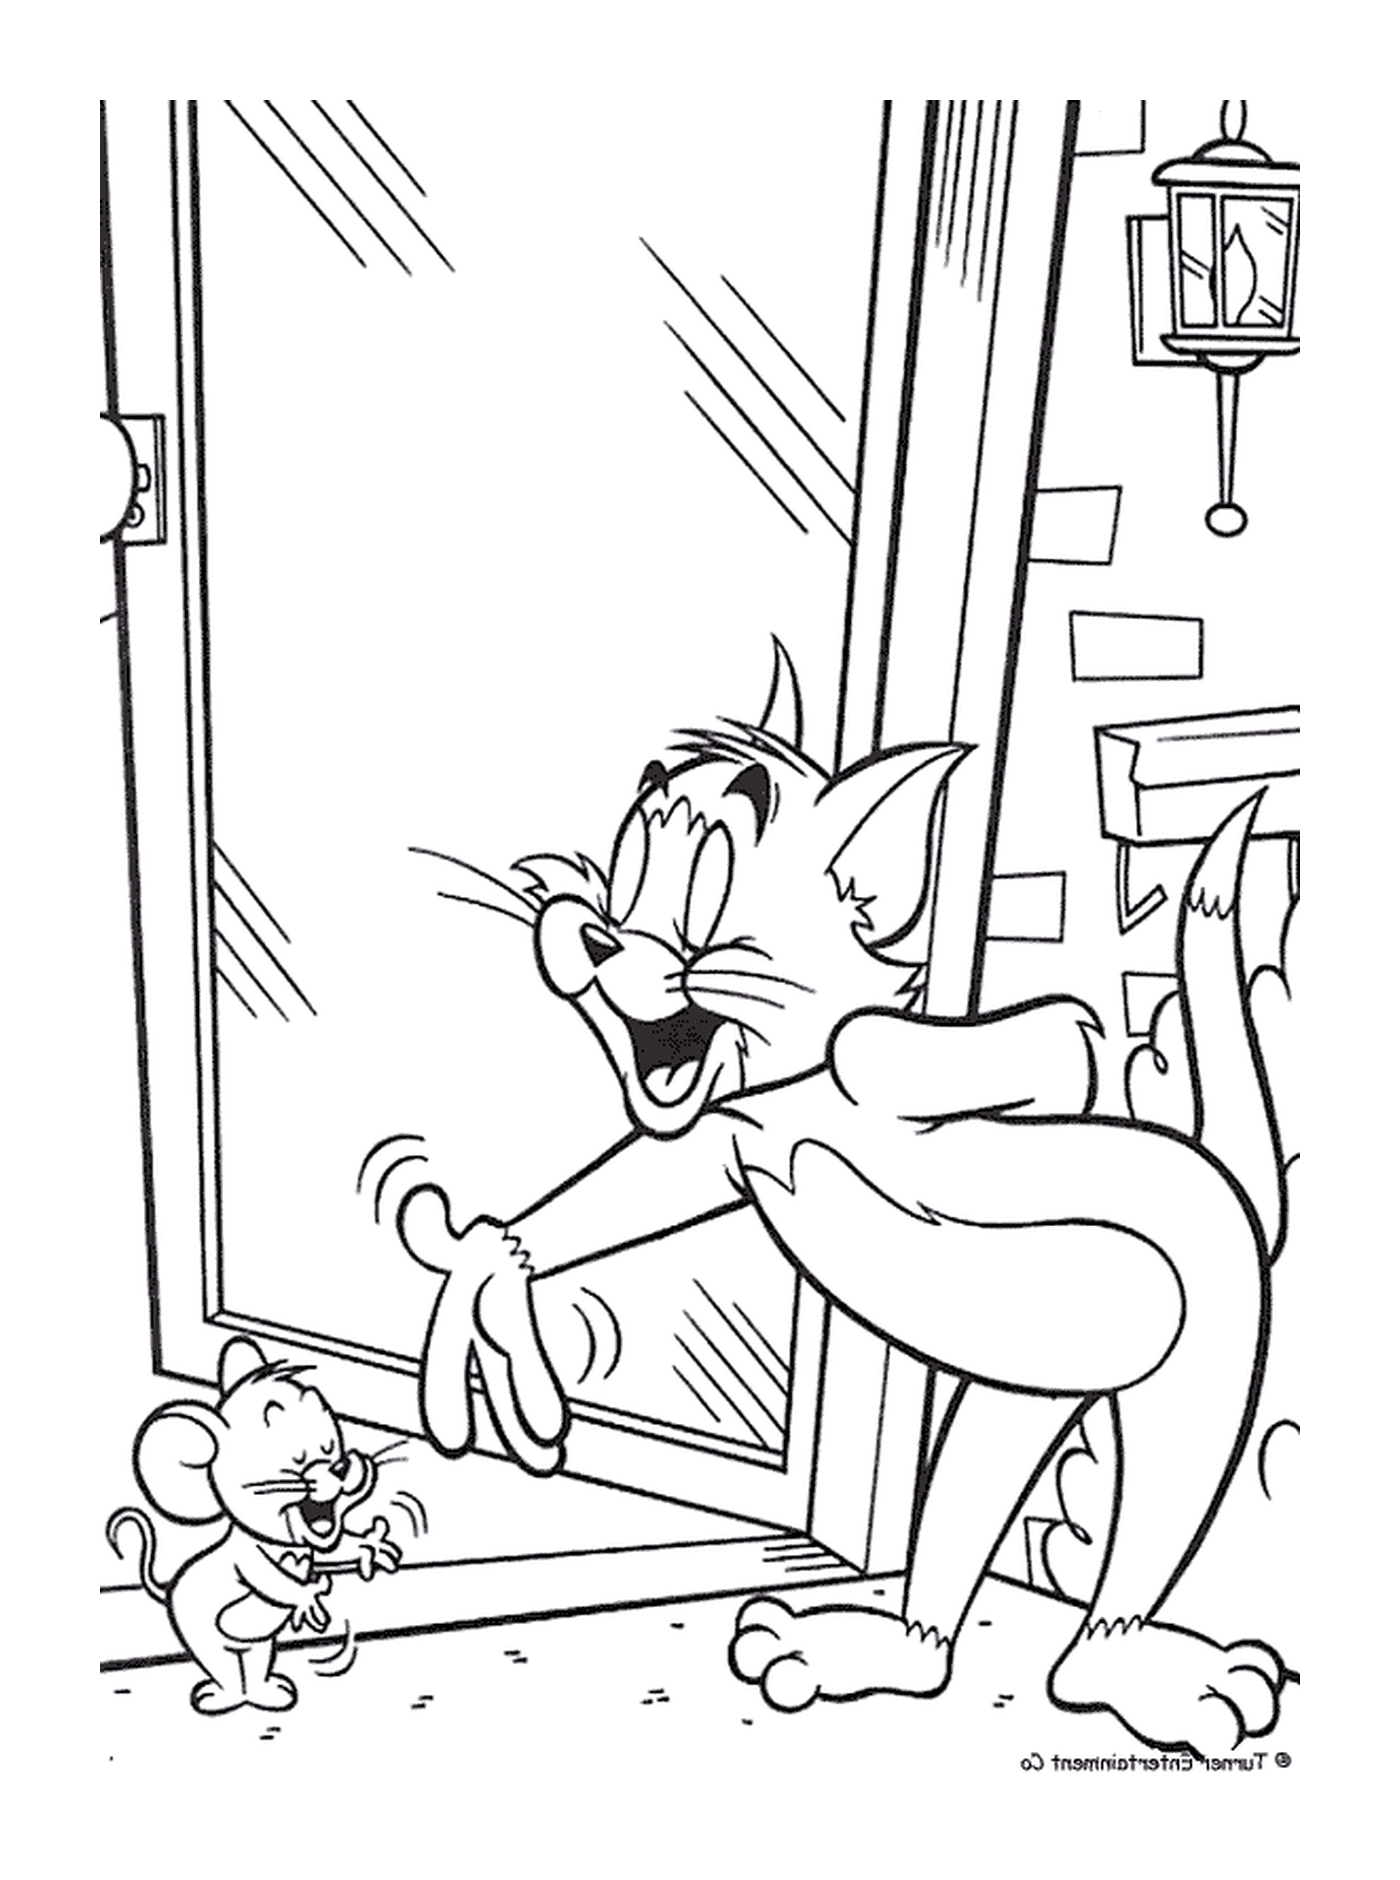  Tom und Jerry grüßen einander 